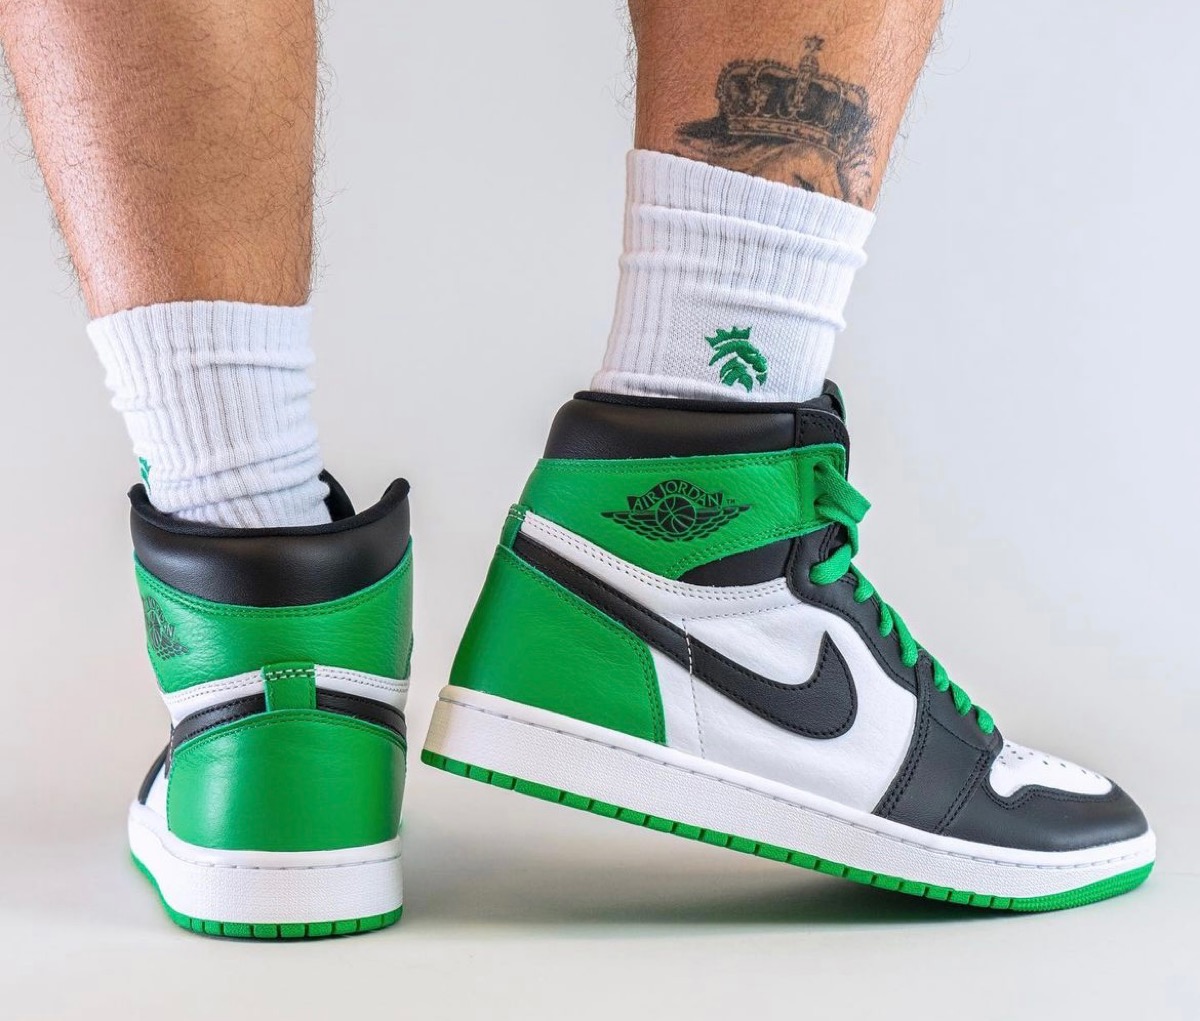 CelticsカラーのNike Air Jordan 1 Retro High OG “Lucky Green”が国内 ...